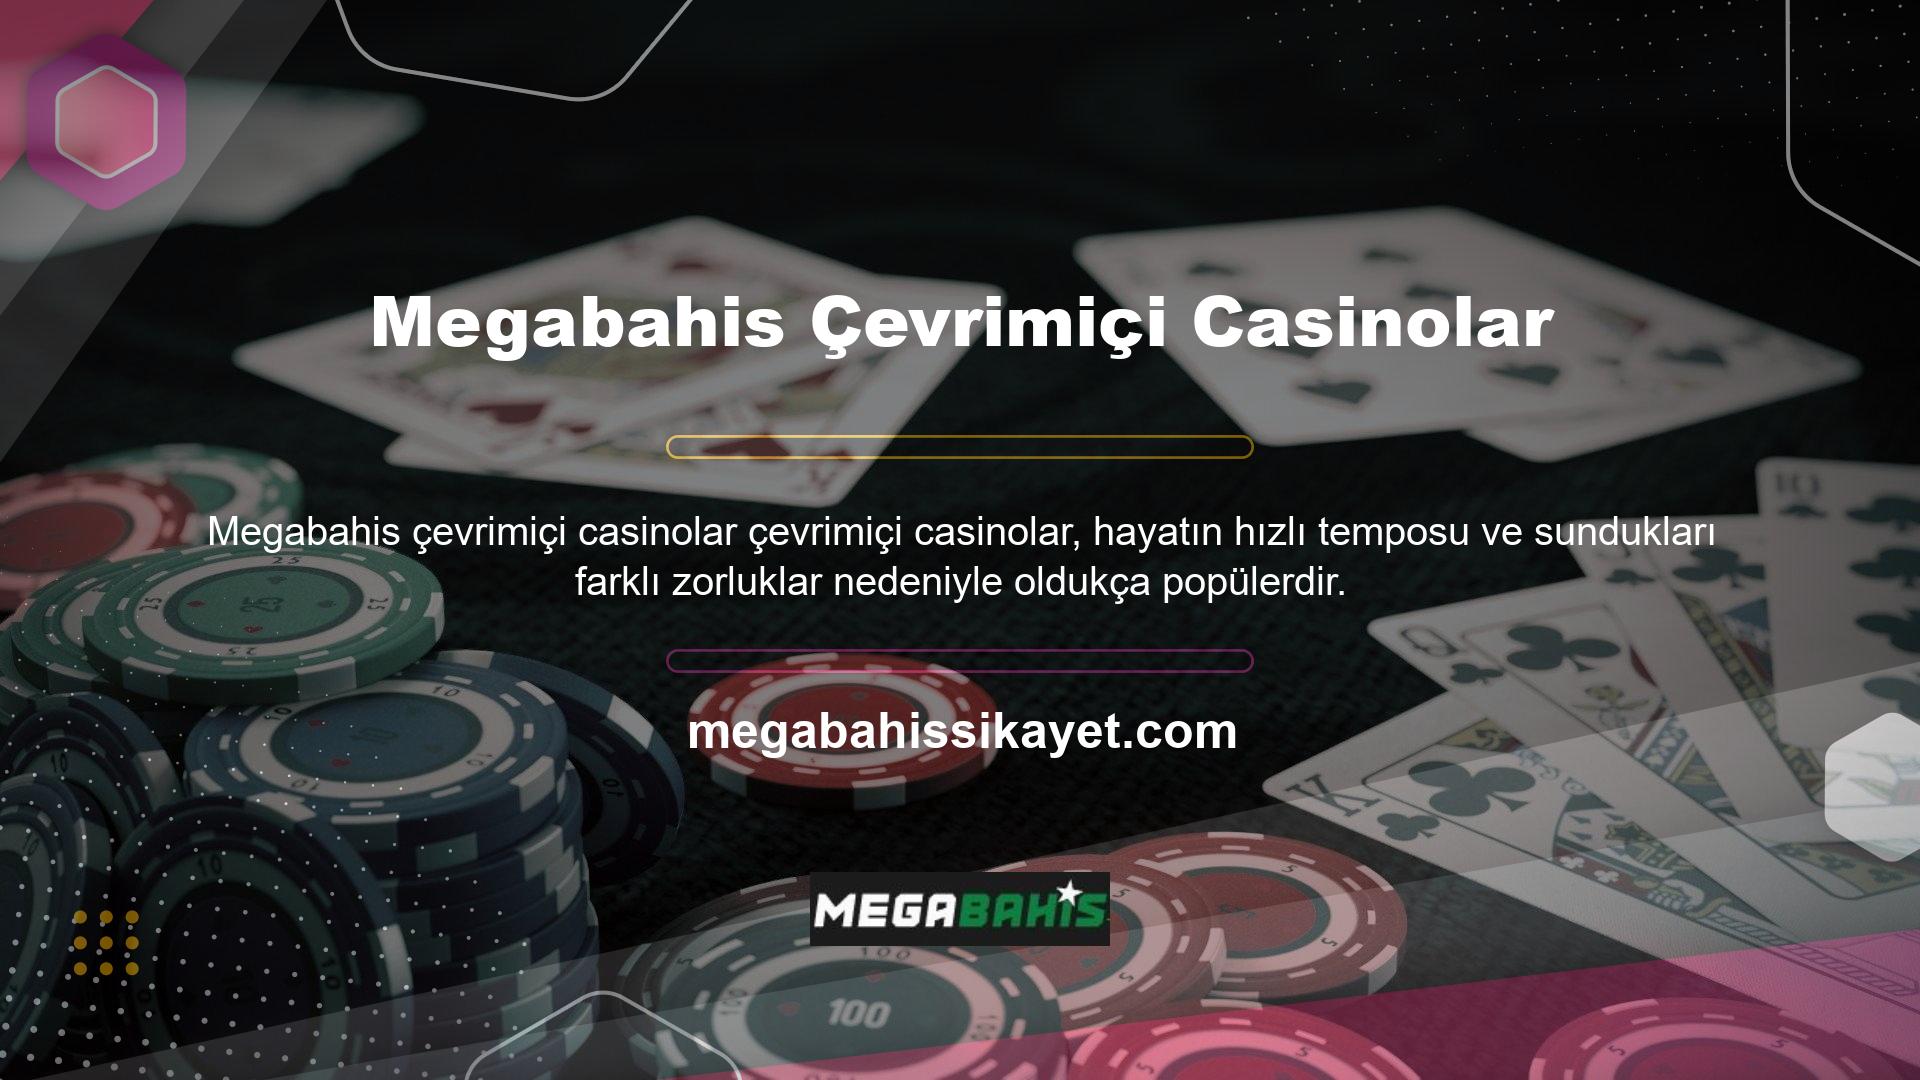 Kıtalararası casino sadece uzun mesafeli casino değil aynı zamanda çevrimiçi casino da içerir